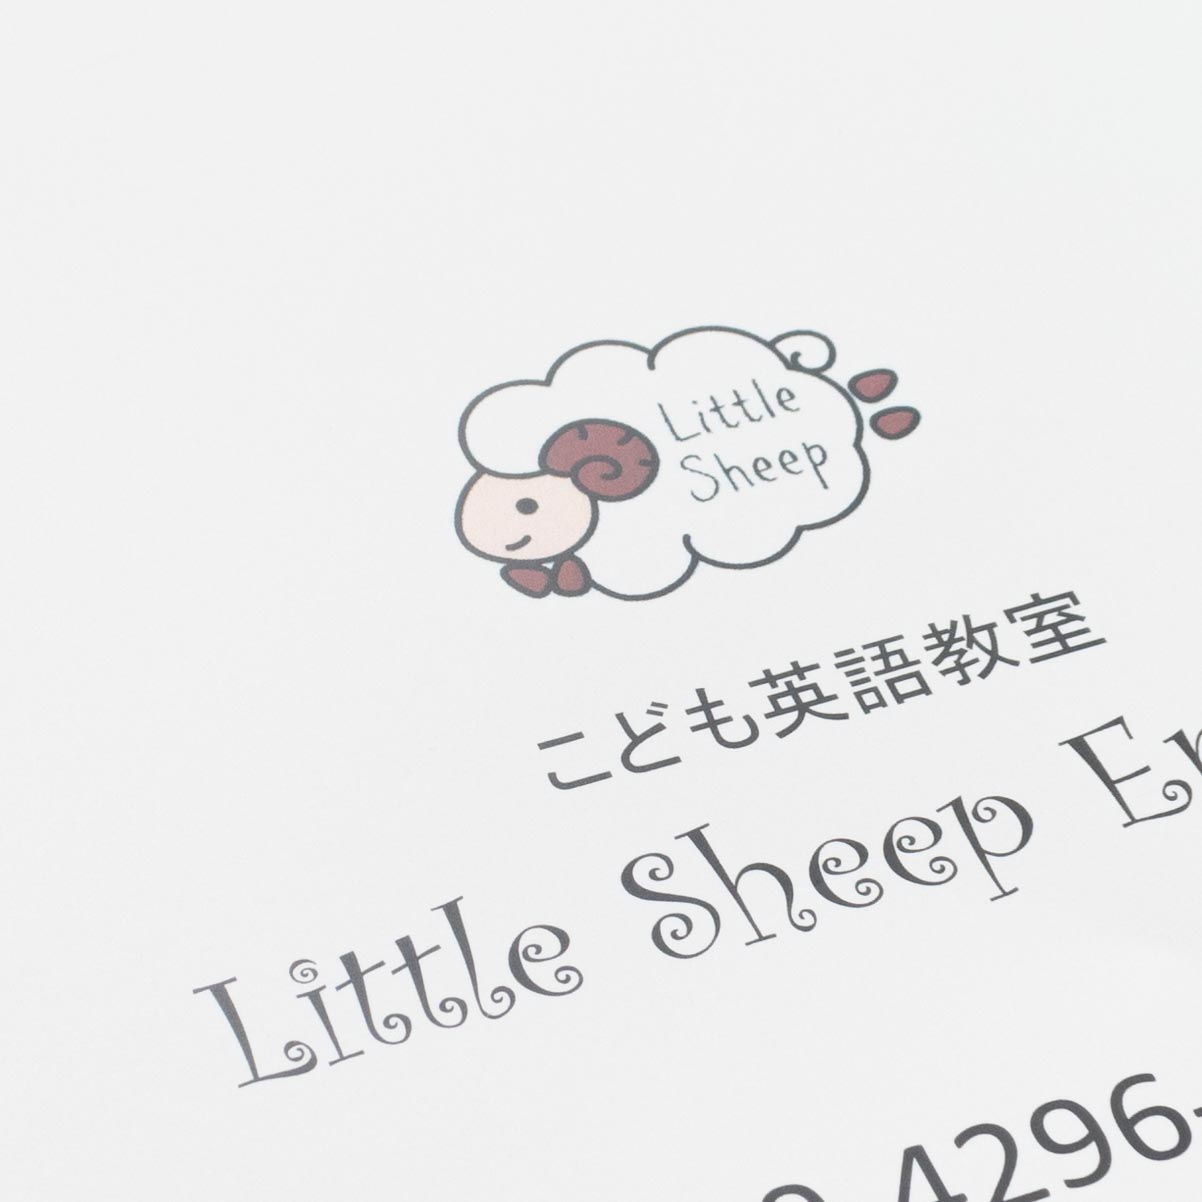 「こども英語教室Little Sheep English 様」製作のオリジナルノート ギャラリー写真1